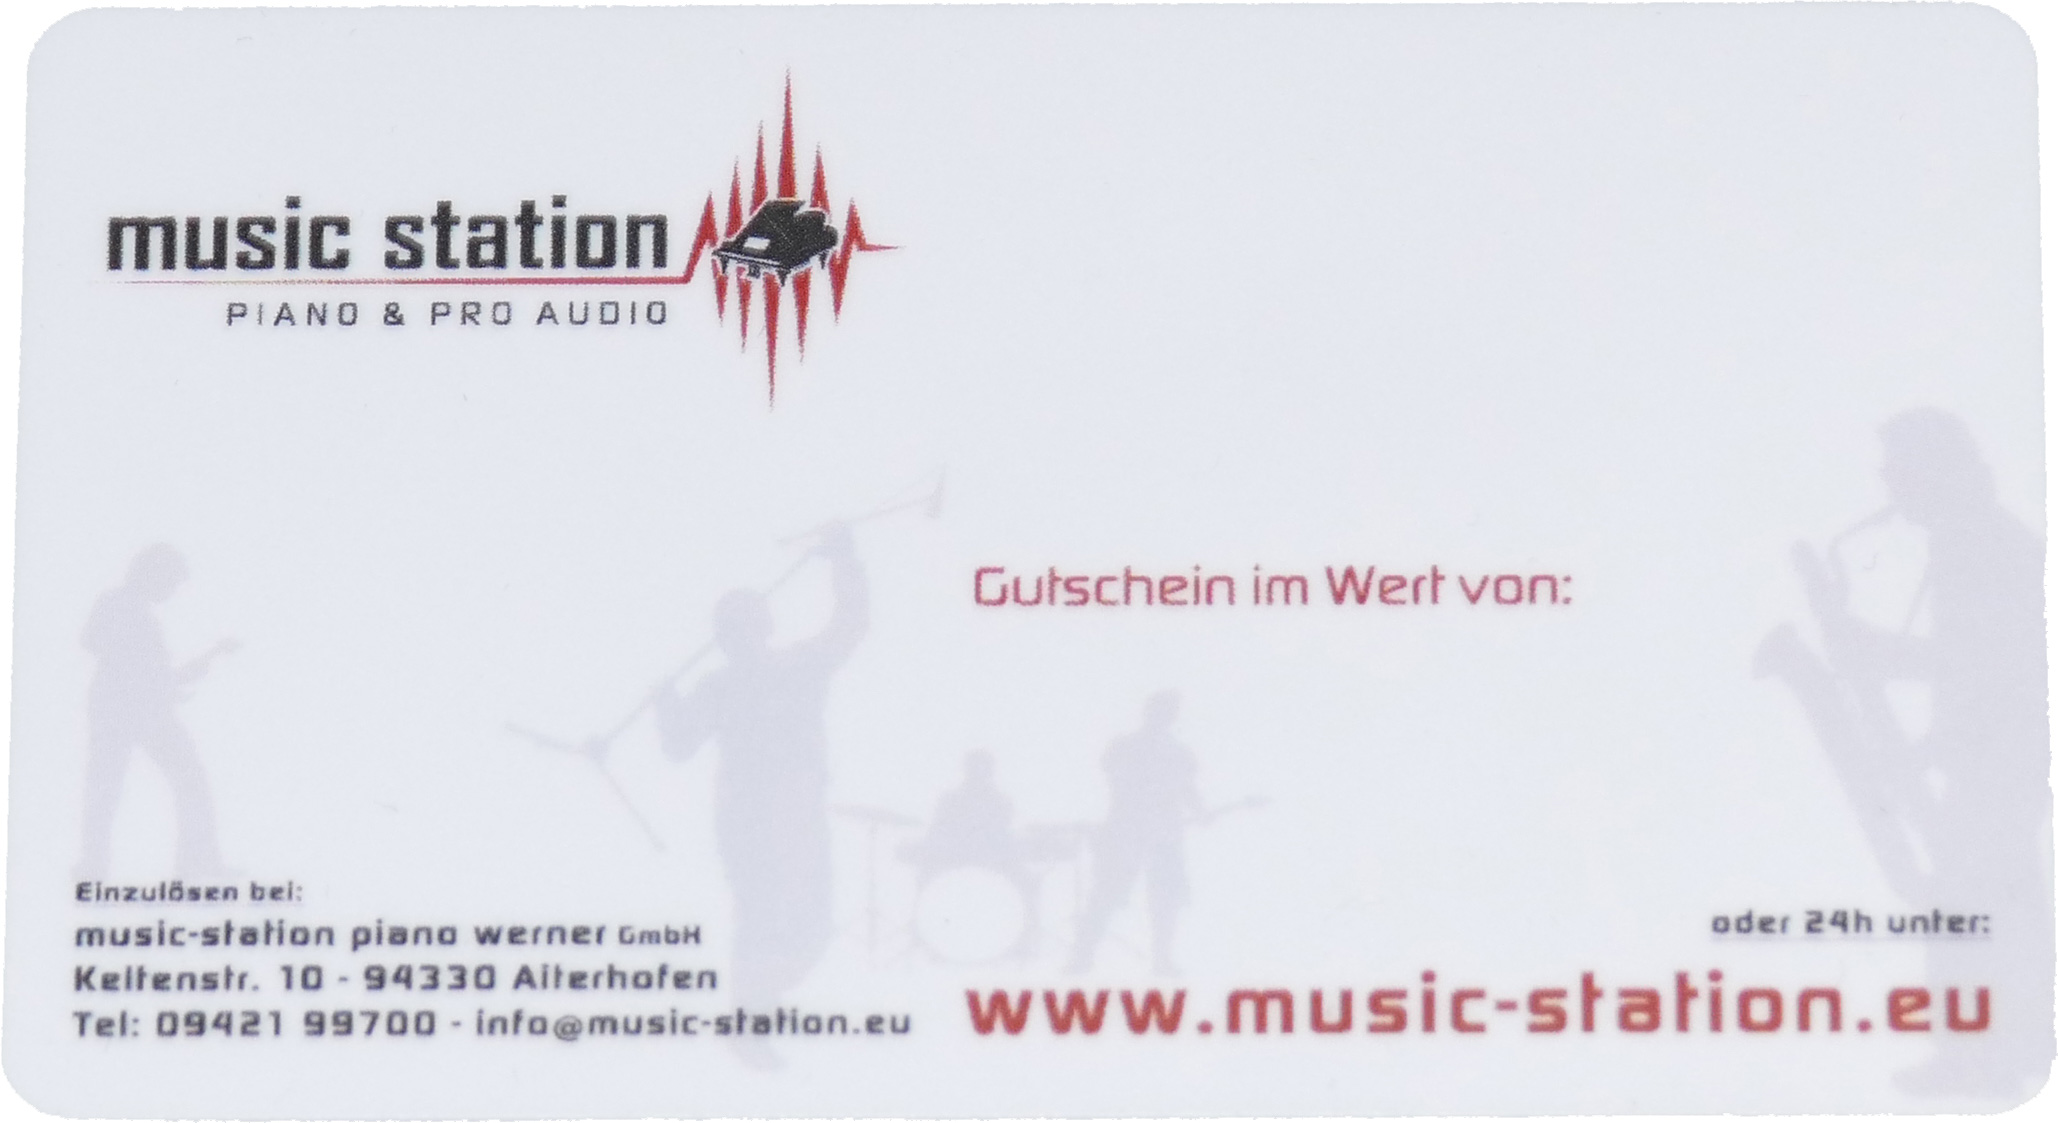 Music Station Gutschein 150 Euro